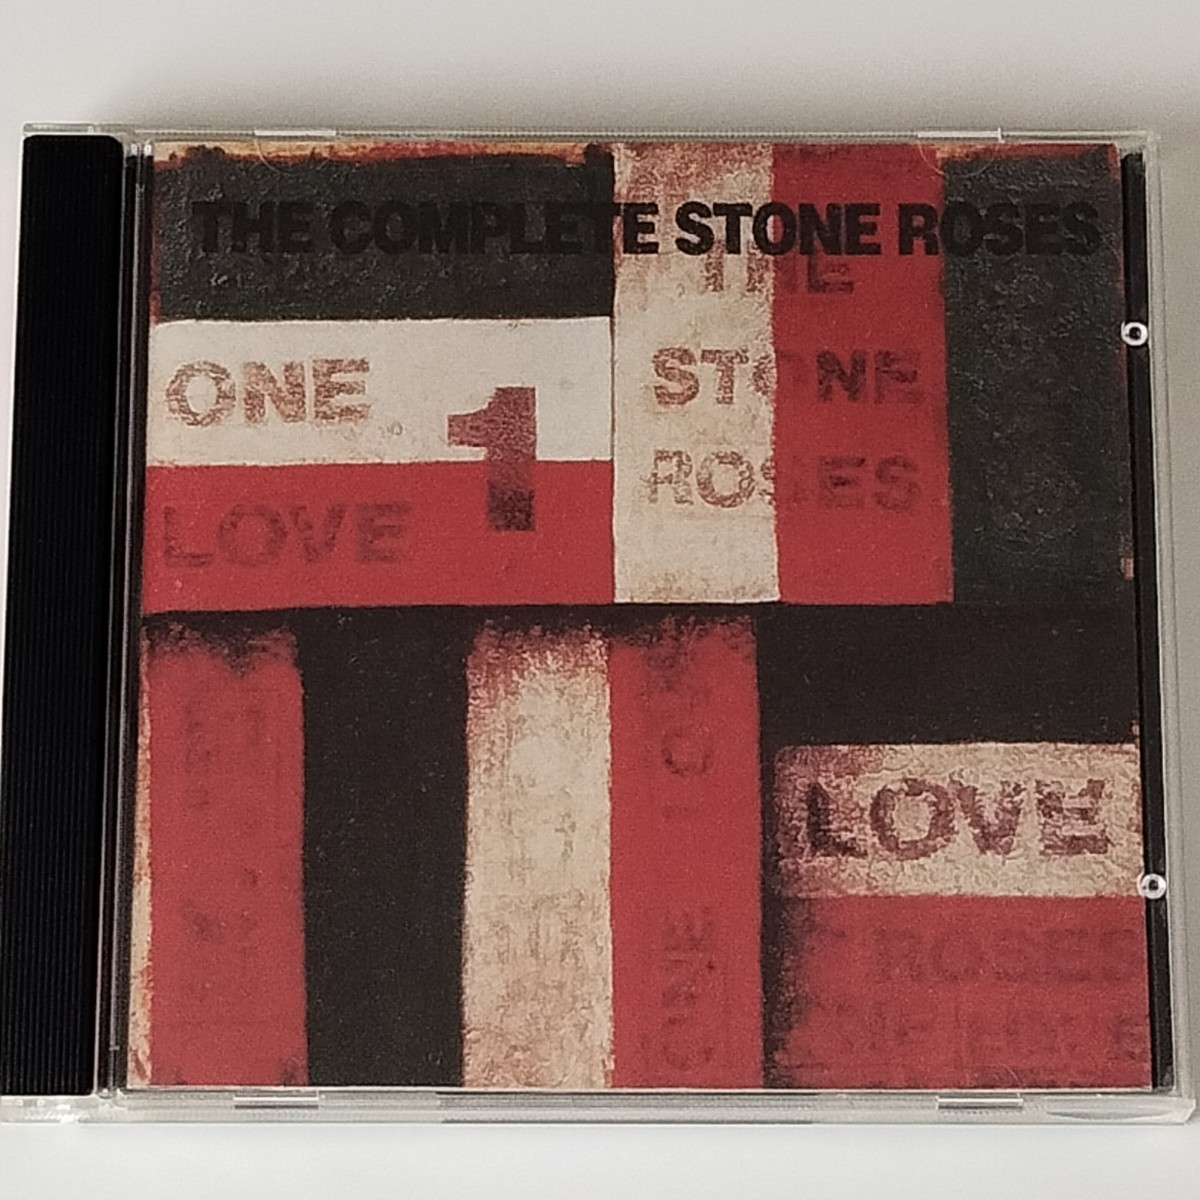 【輸入盤BEST】THE COMPLETE STONE ROSES(01241415612)ザ・コンプリート・ストーン・ローゼズ/ベスト/IAN BROWN イアン・ブラウン_画像1